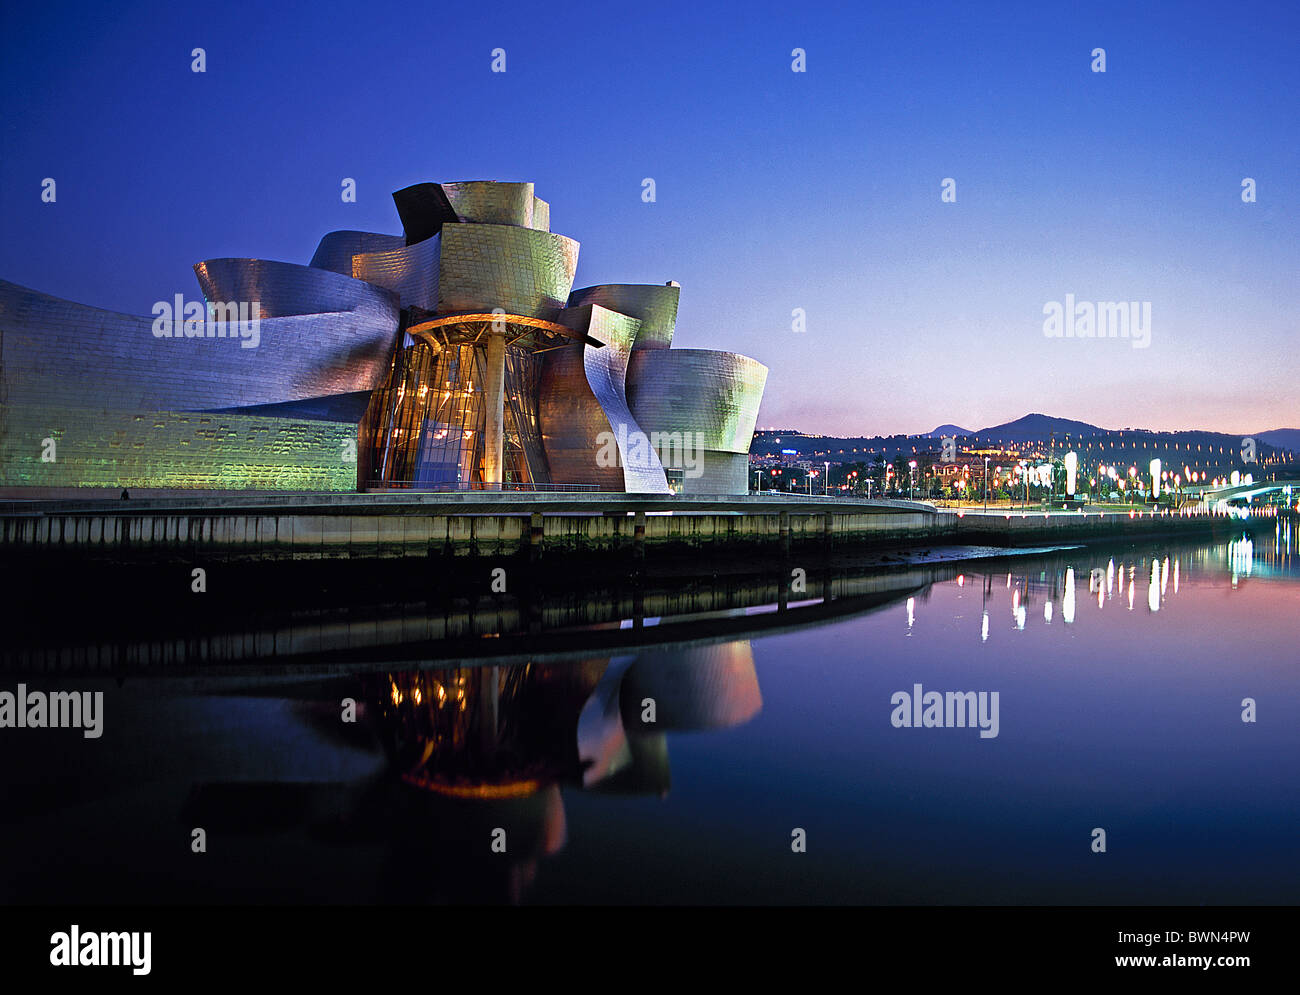 Stadt Spanien Europa Bilbao Guggenheim Museumskunst bei Nacht Dämmerung beleuchtet Beleuchtung Reflexionen Wasser Stockfoto